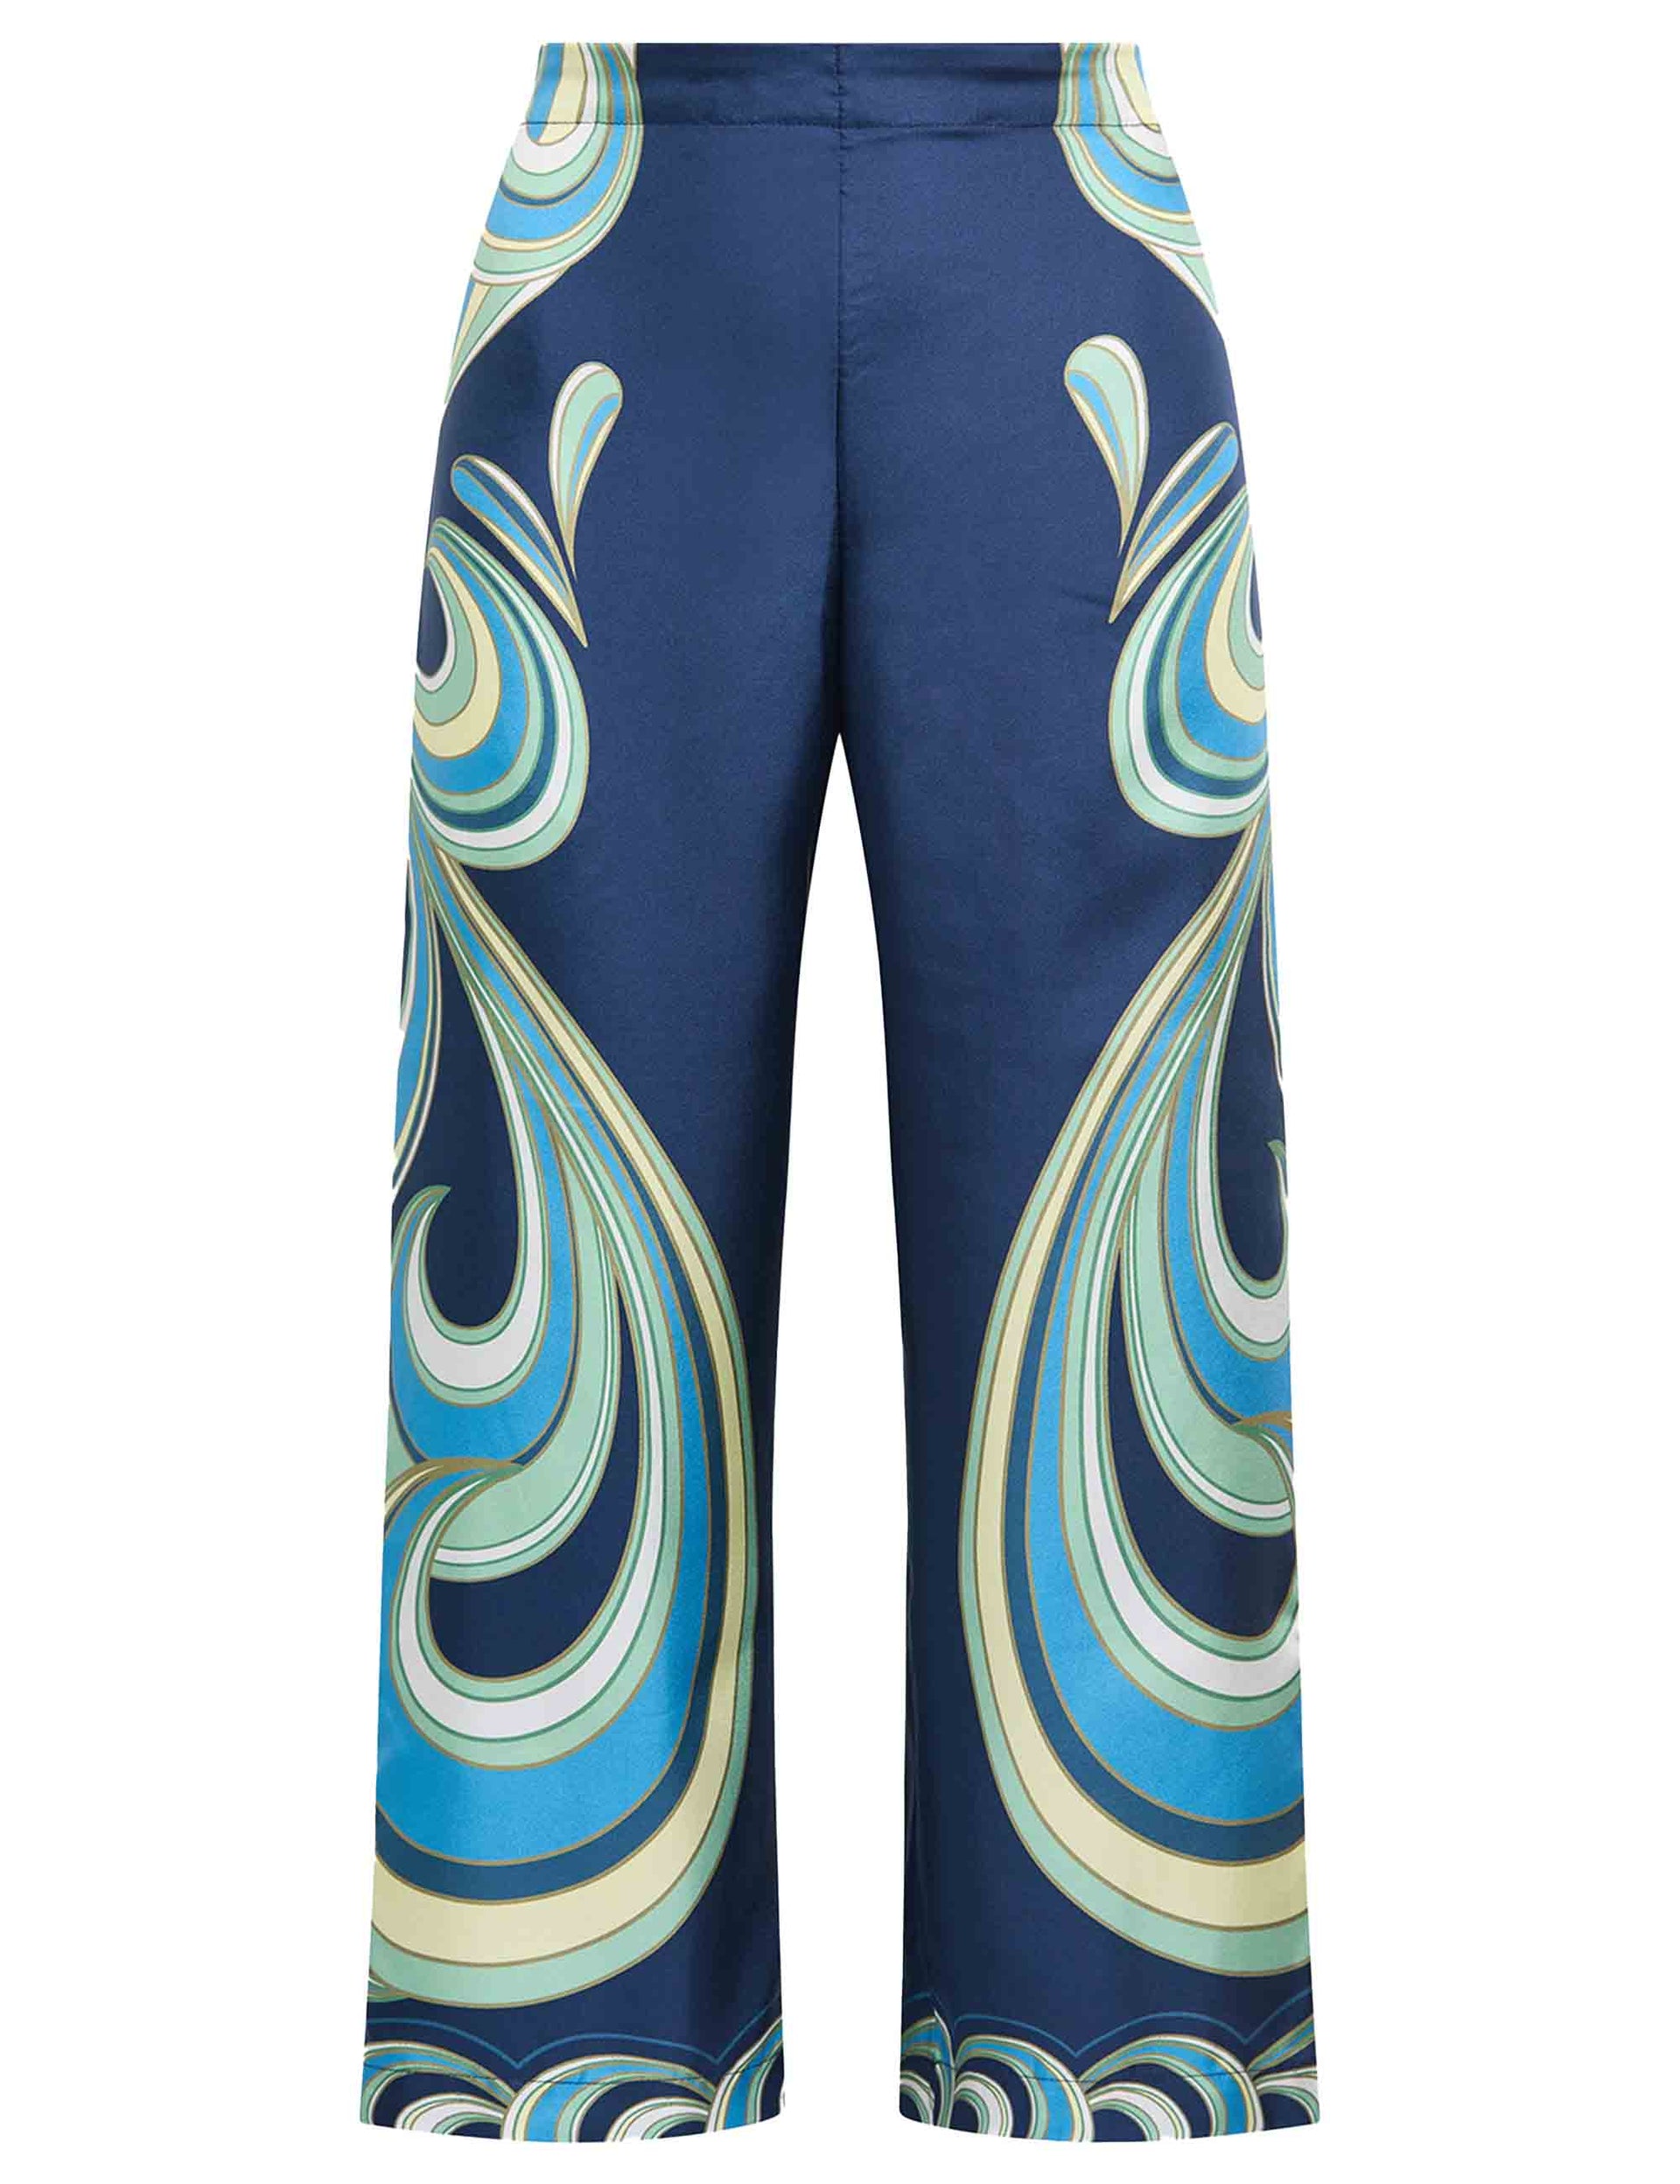 Pantaloni donna Collection Print in seta blu stampata a gamba larga